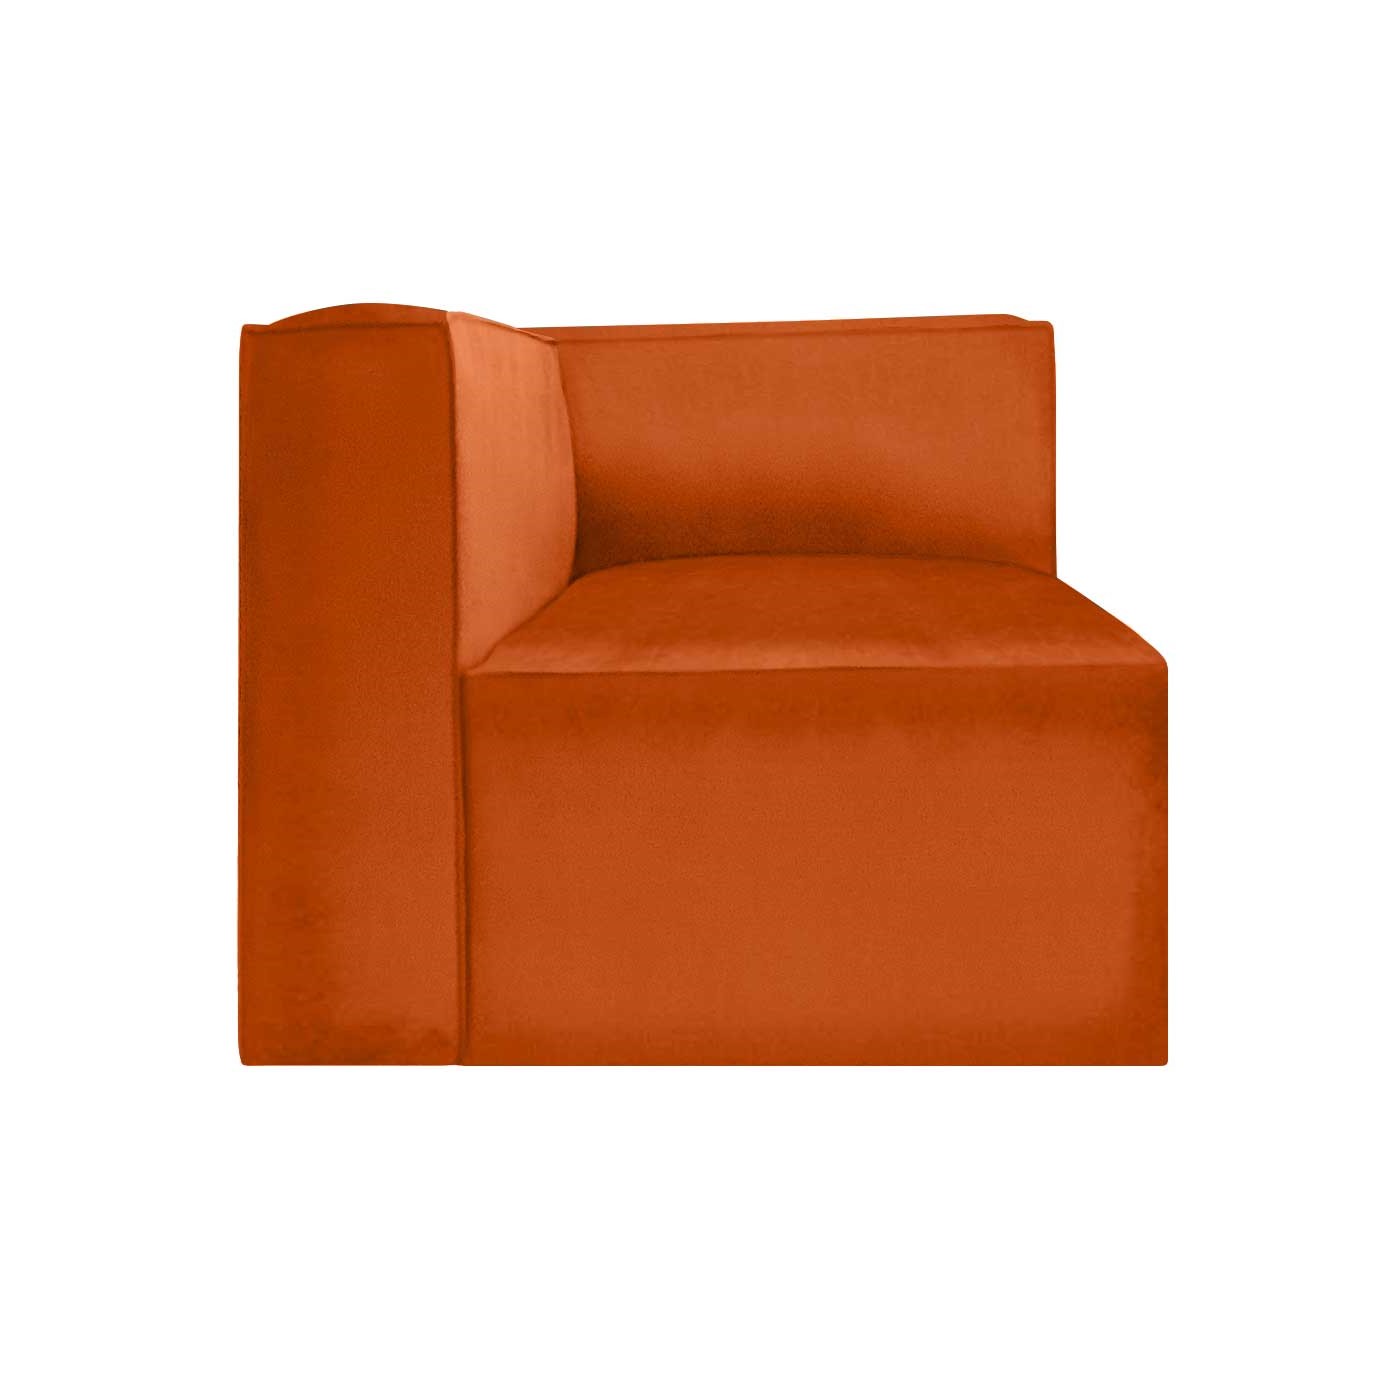 Malmo Orange Right Hand Corner Seater